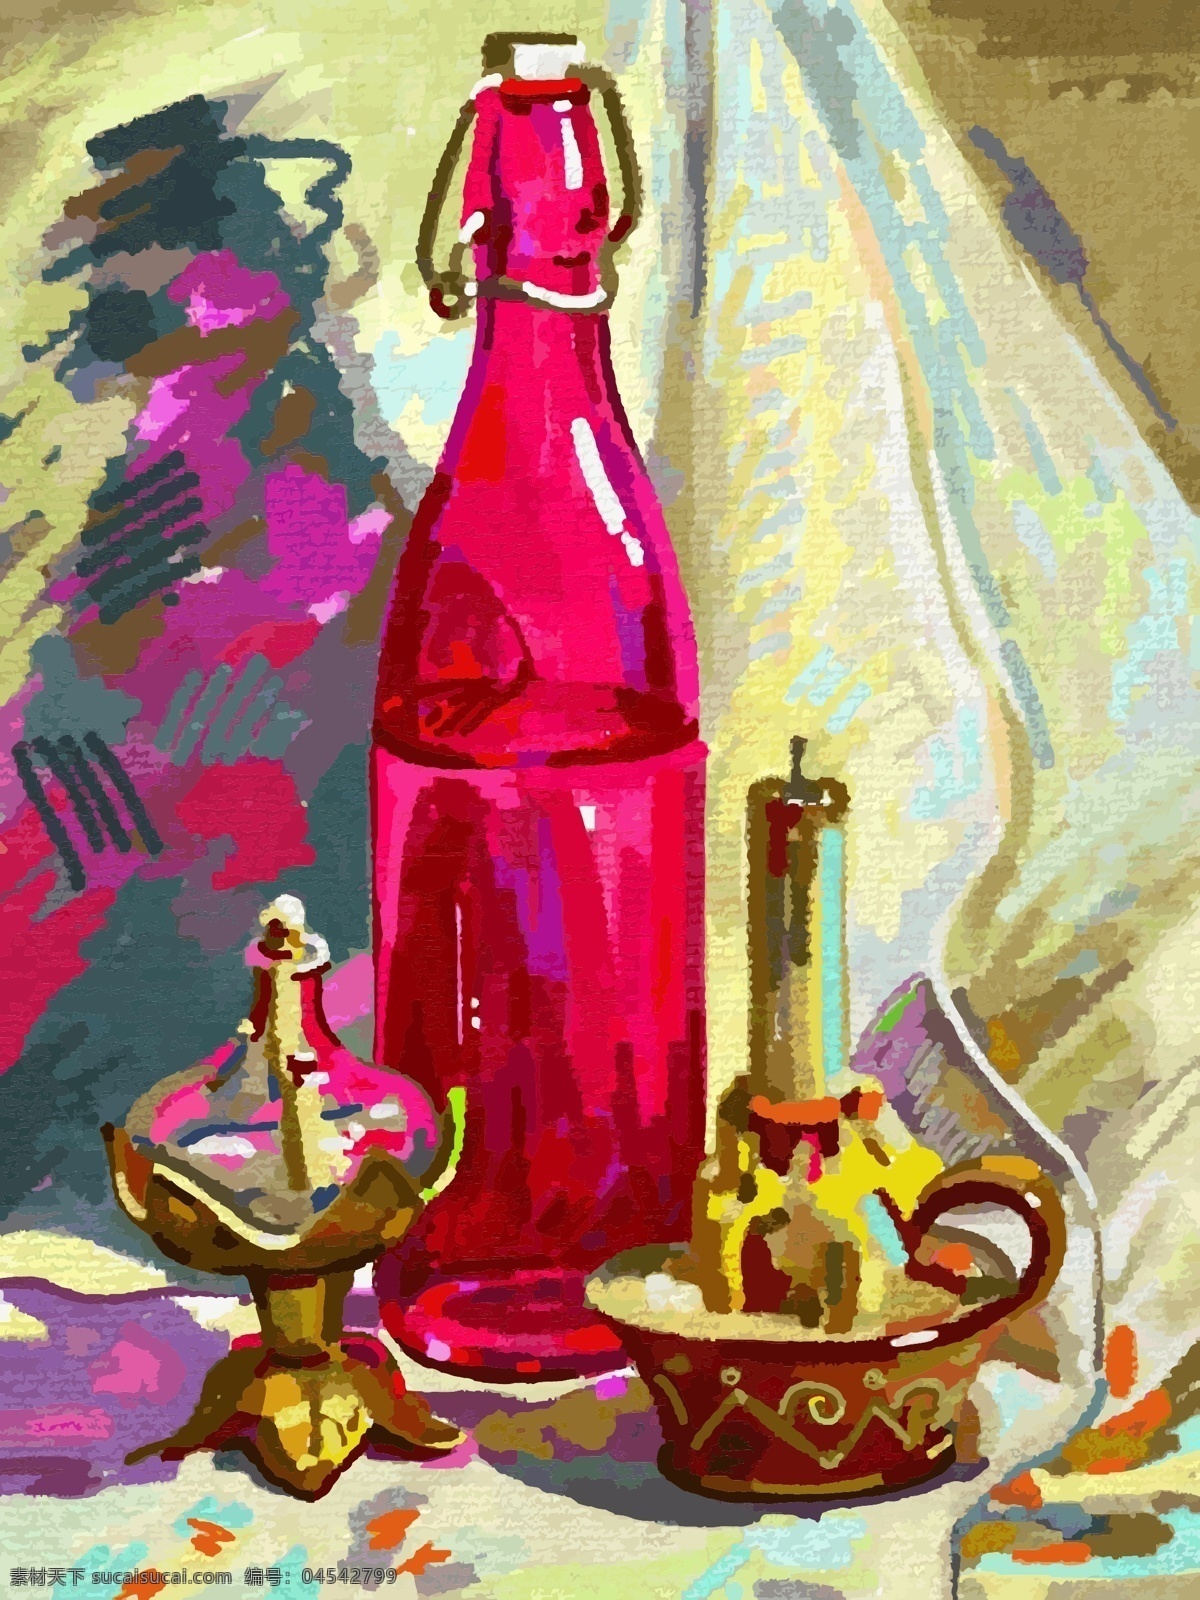 蜡烛 酒瓶 油画 写生 静物 印象派油画 抽象画 抽象油画 油画艺术 绘画艺术 装饰画 其他艺术 文化艺术 矢量素材 红色